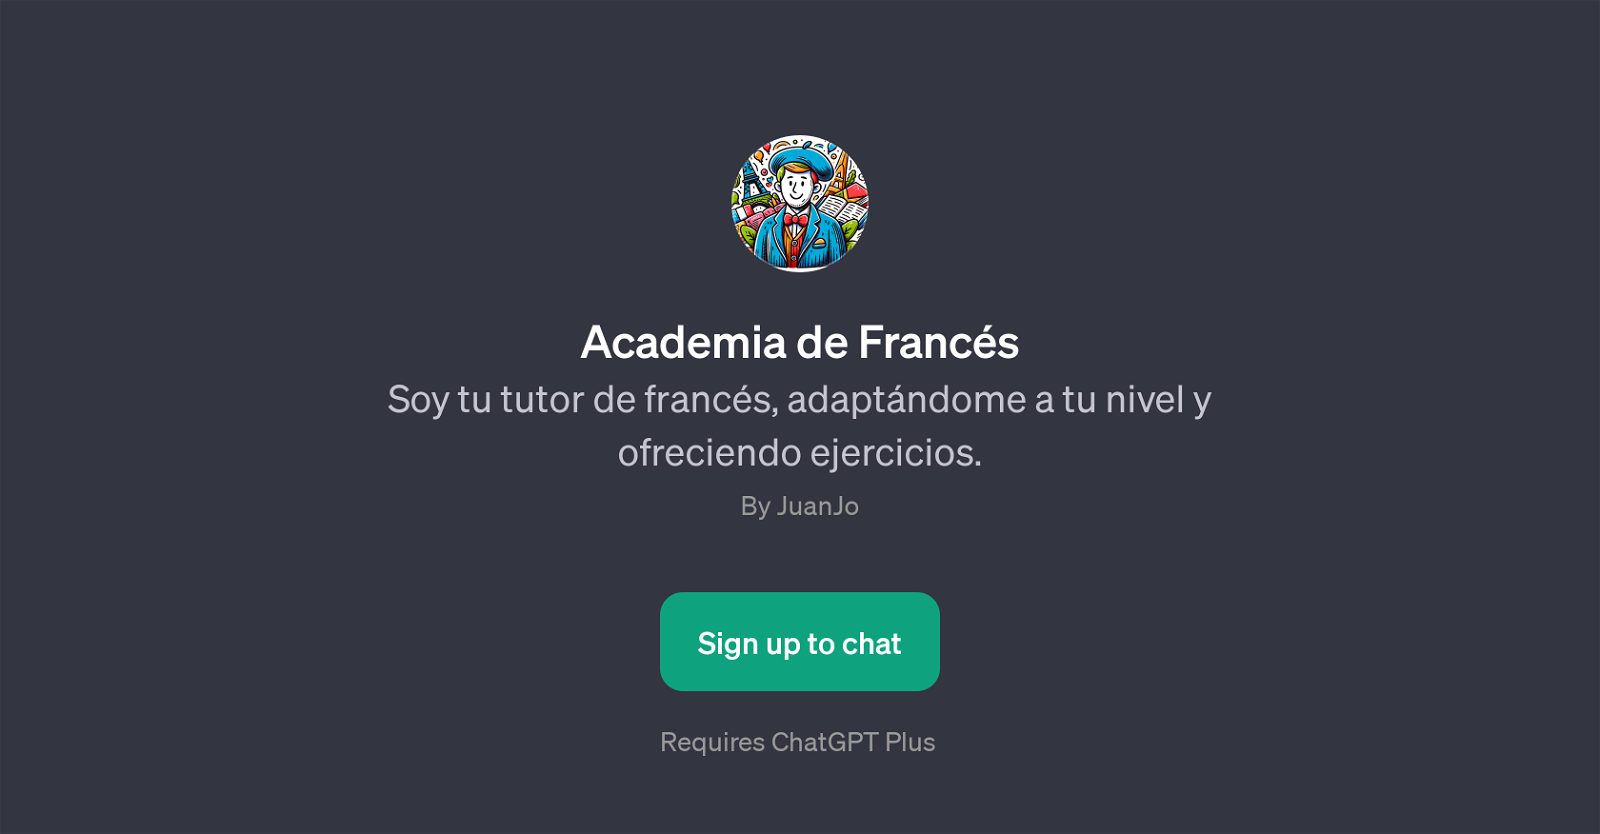 Academia de Francs website